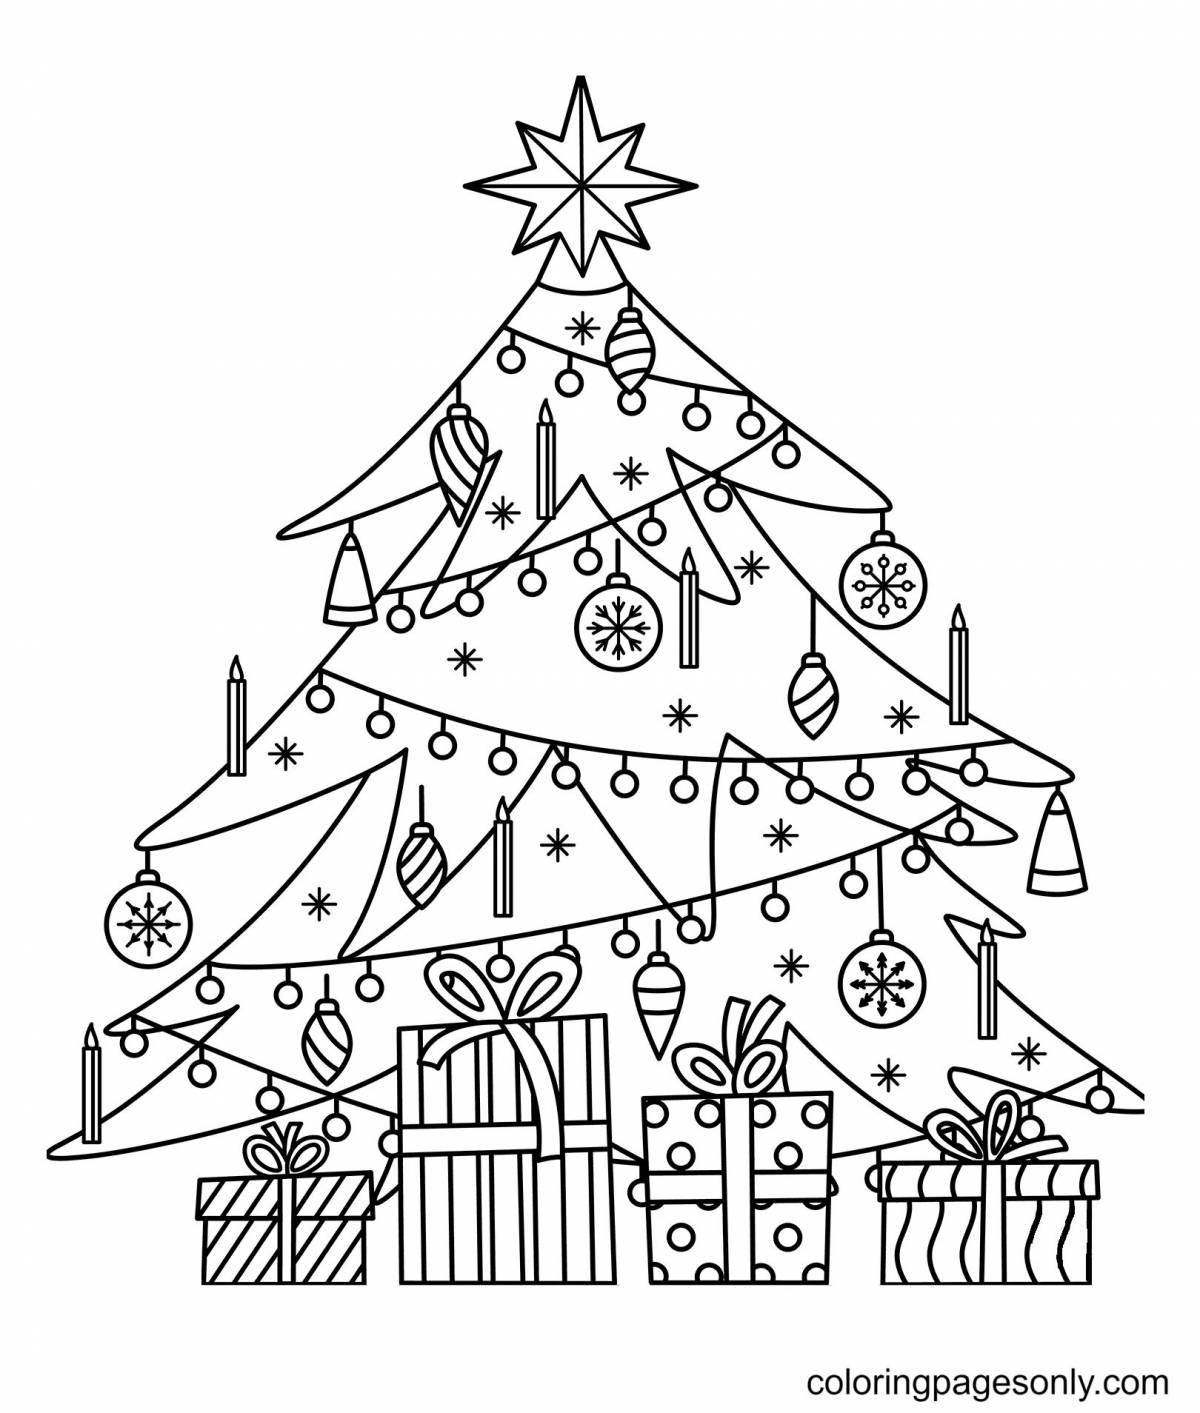 Великолепная страница раскраски рождественской елки